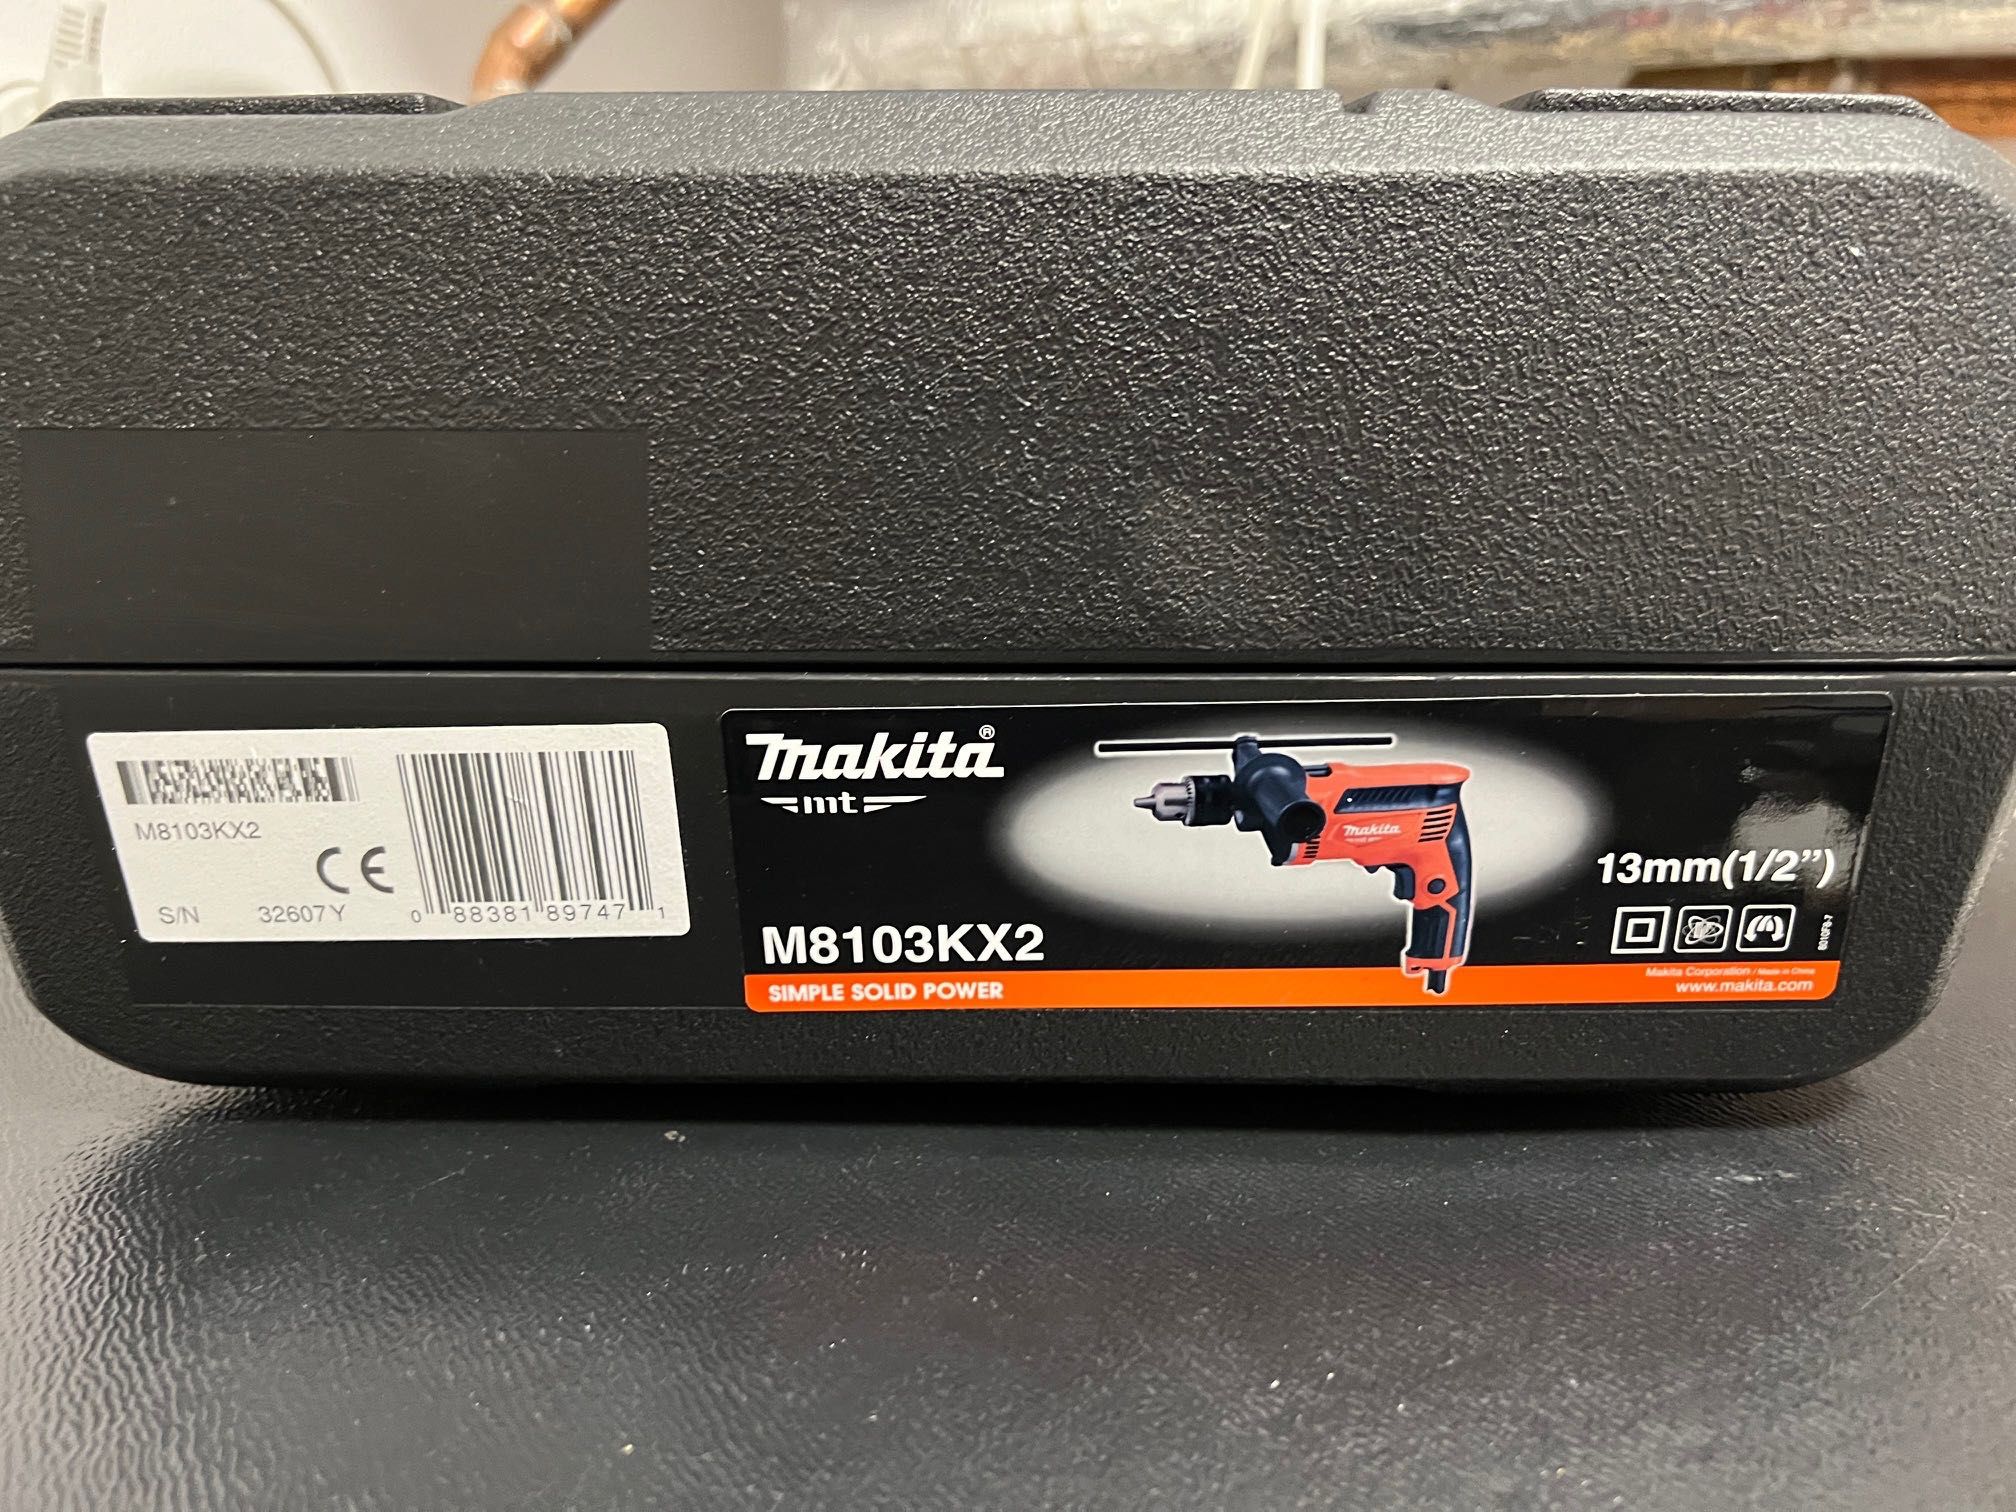 Sprzedam wiertarkę Makita w walizce z akcesoriami model M8103KX2